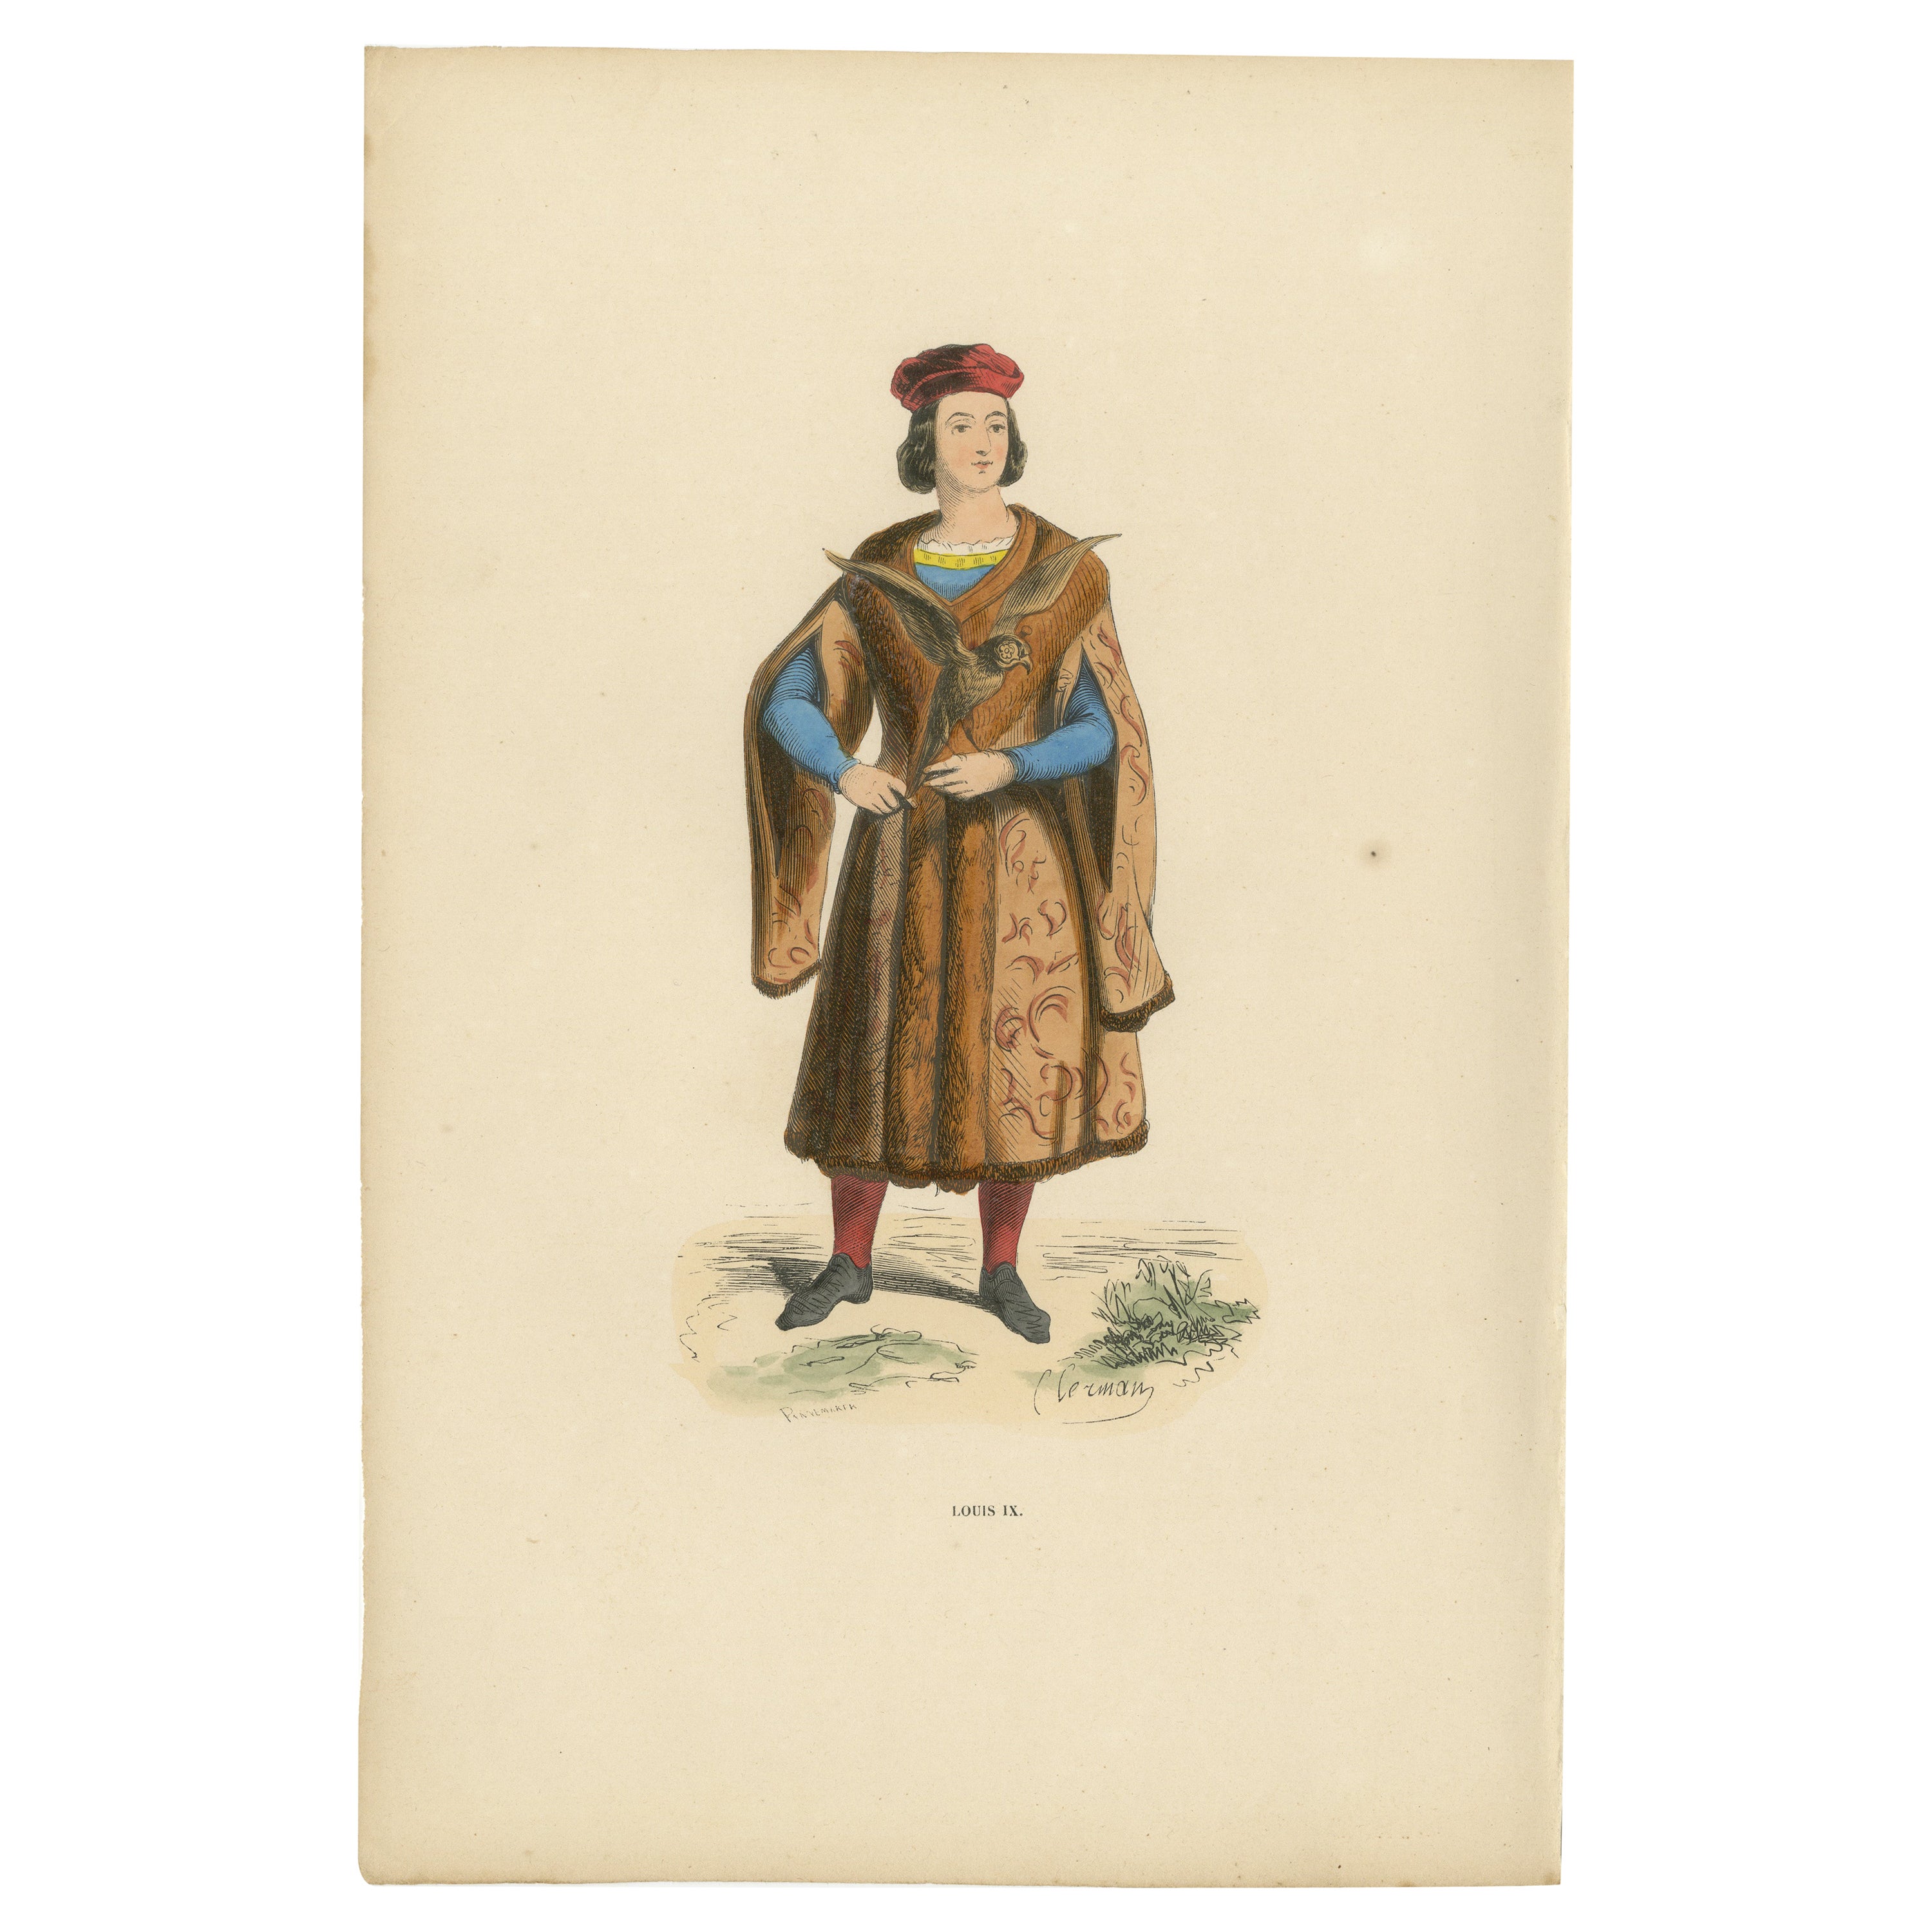 Louis IX : un portrait de la royauté française en apparence médiévale, publié en 1847